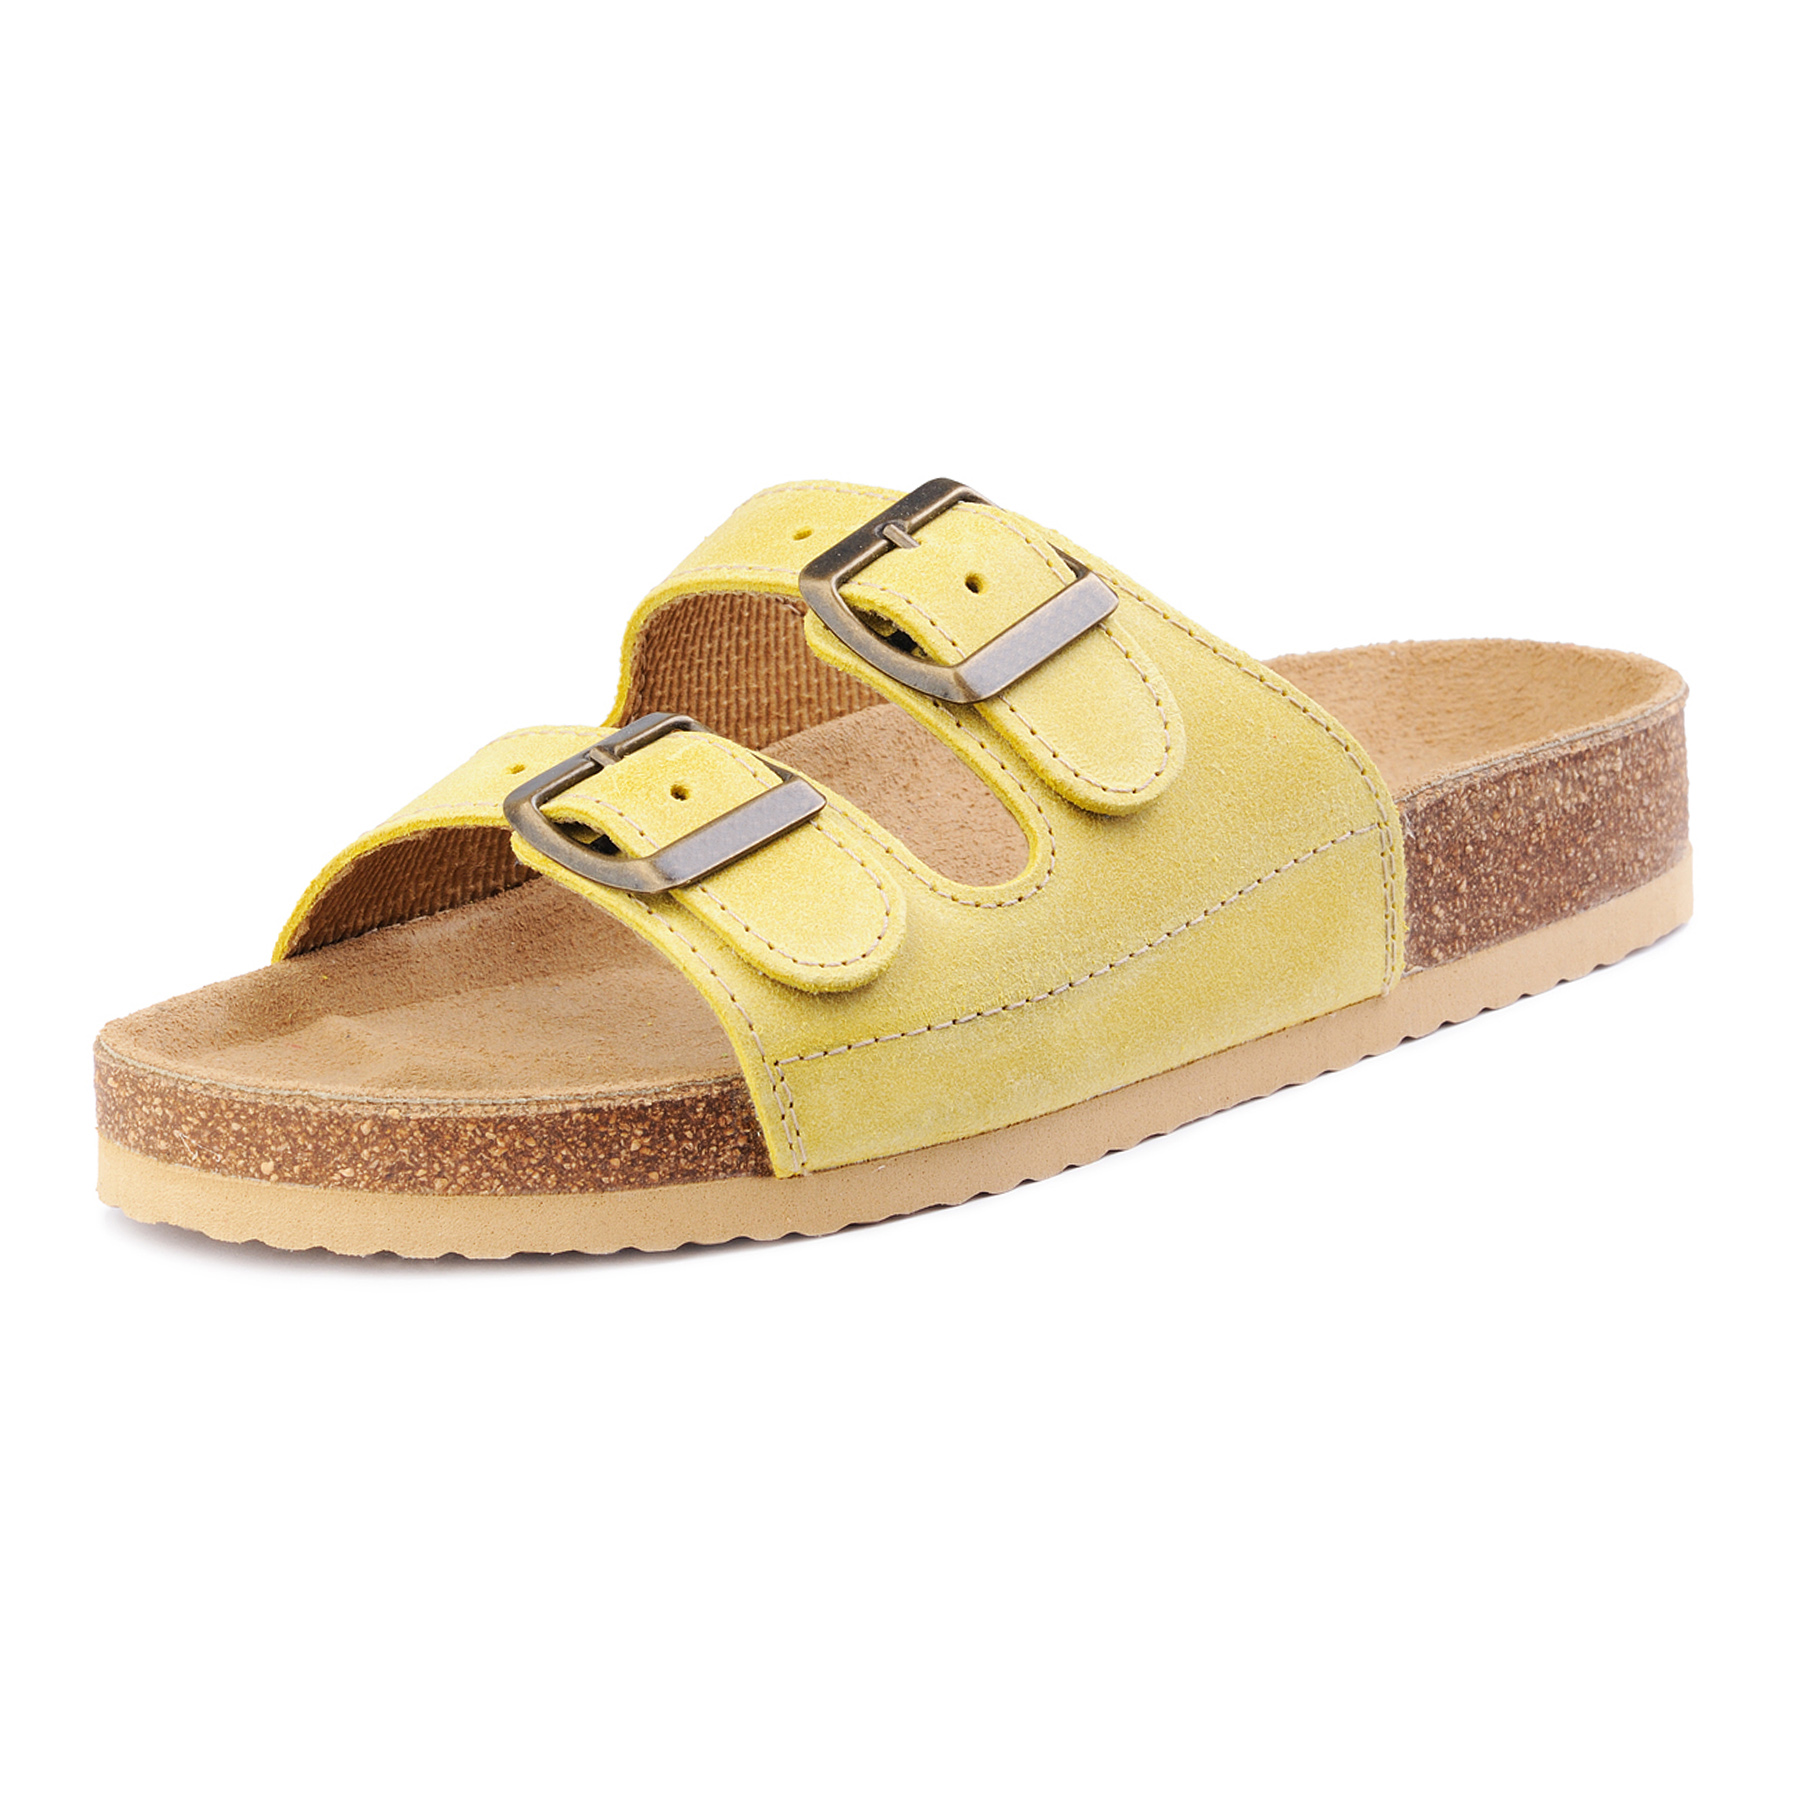 Dámské kožené pantofle dvouprackové žluté Fusakle